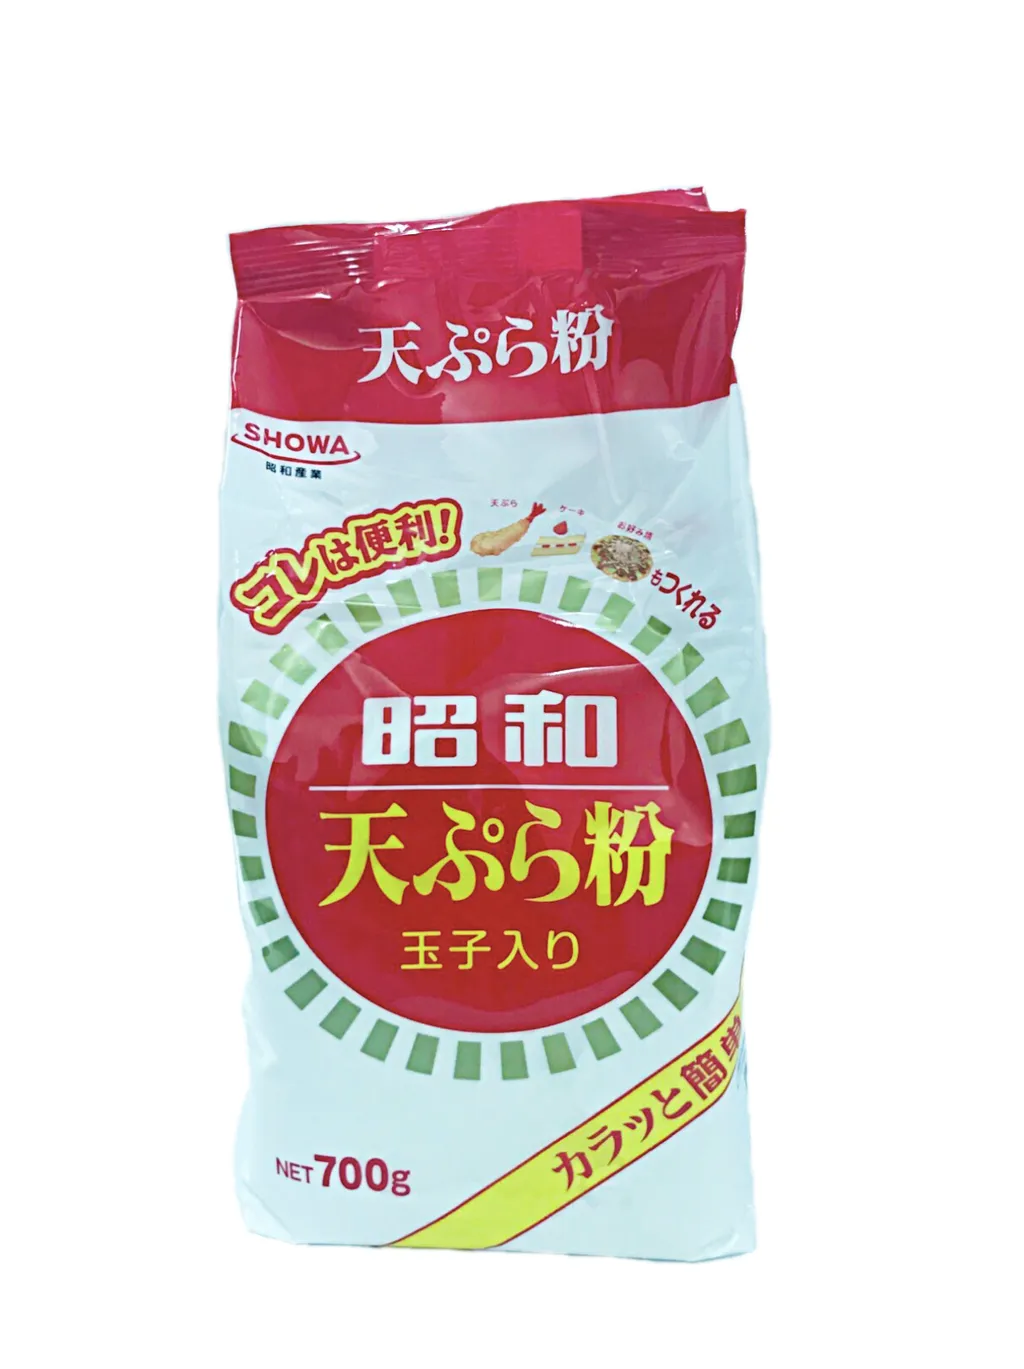 Showa Tempura Flour Ko 50 昭和 天ぷら粉 Kintei Japanese Recipes Groceries